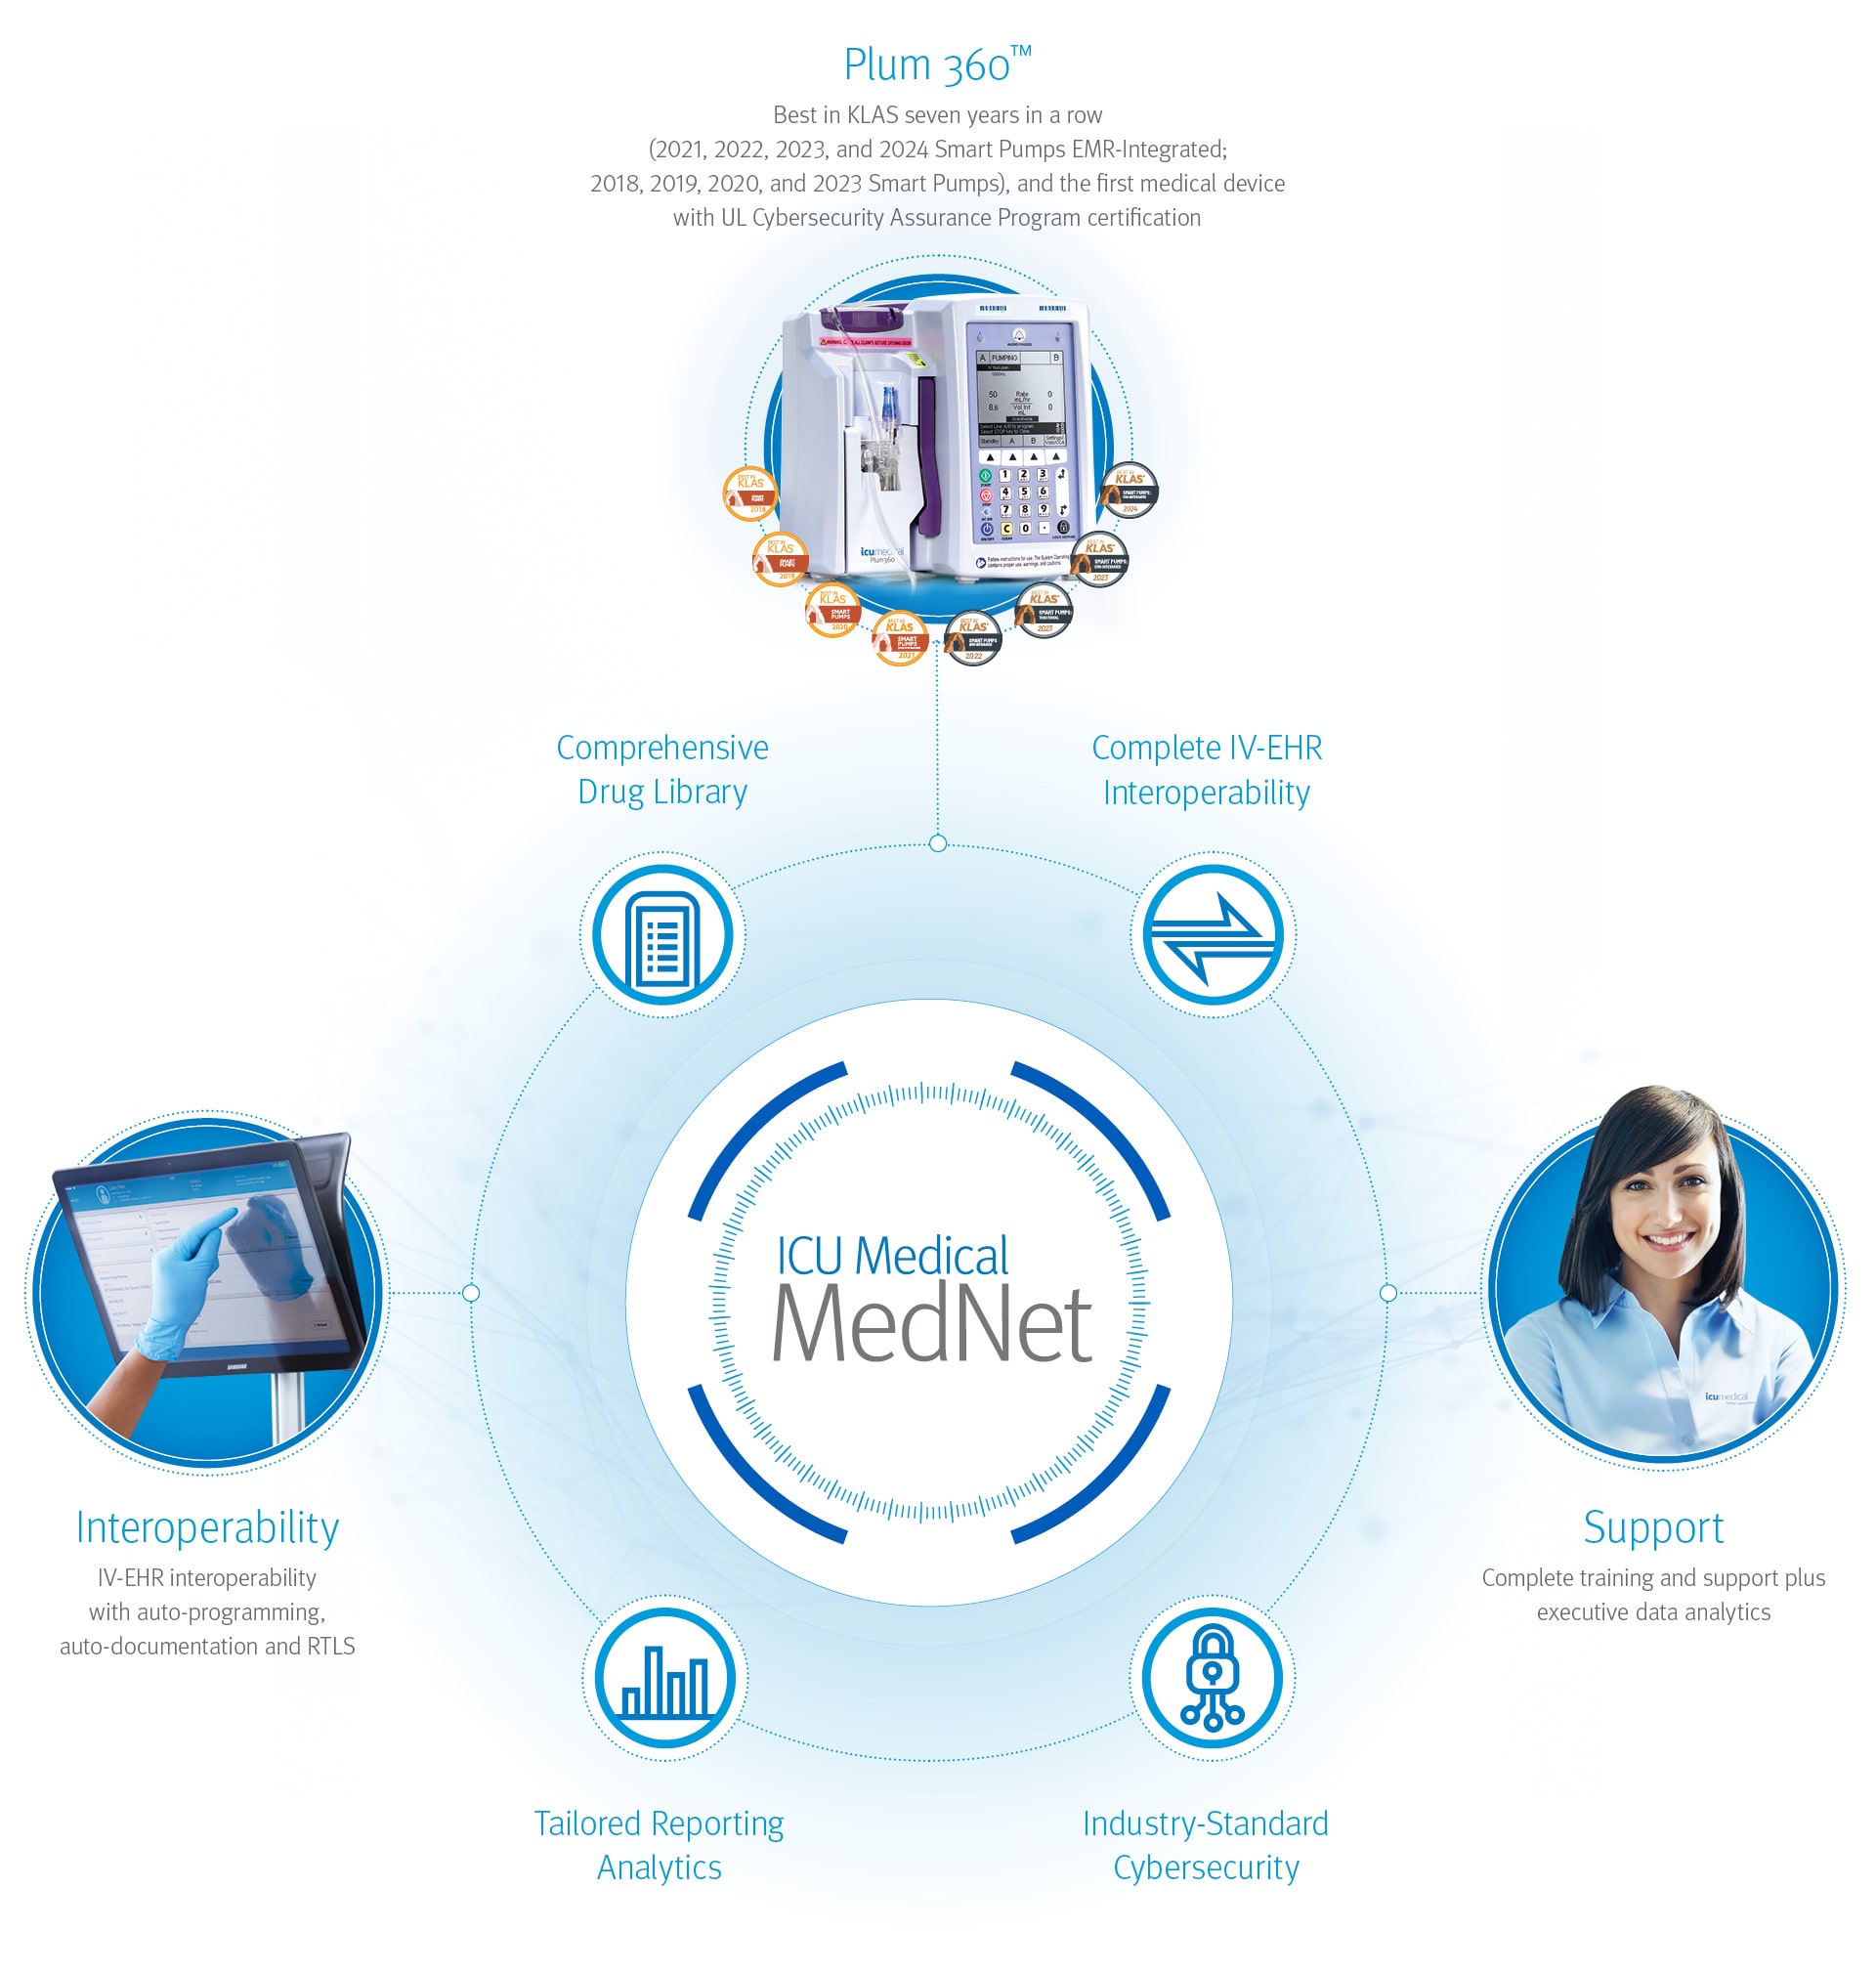 ICU Medical MedNet features